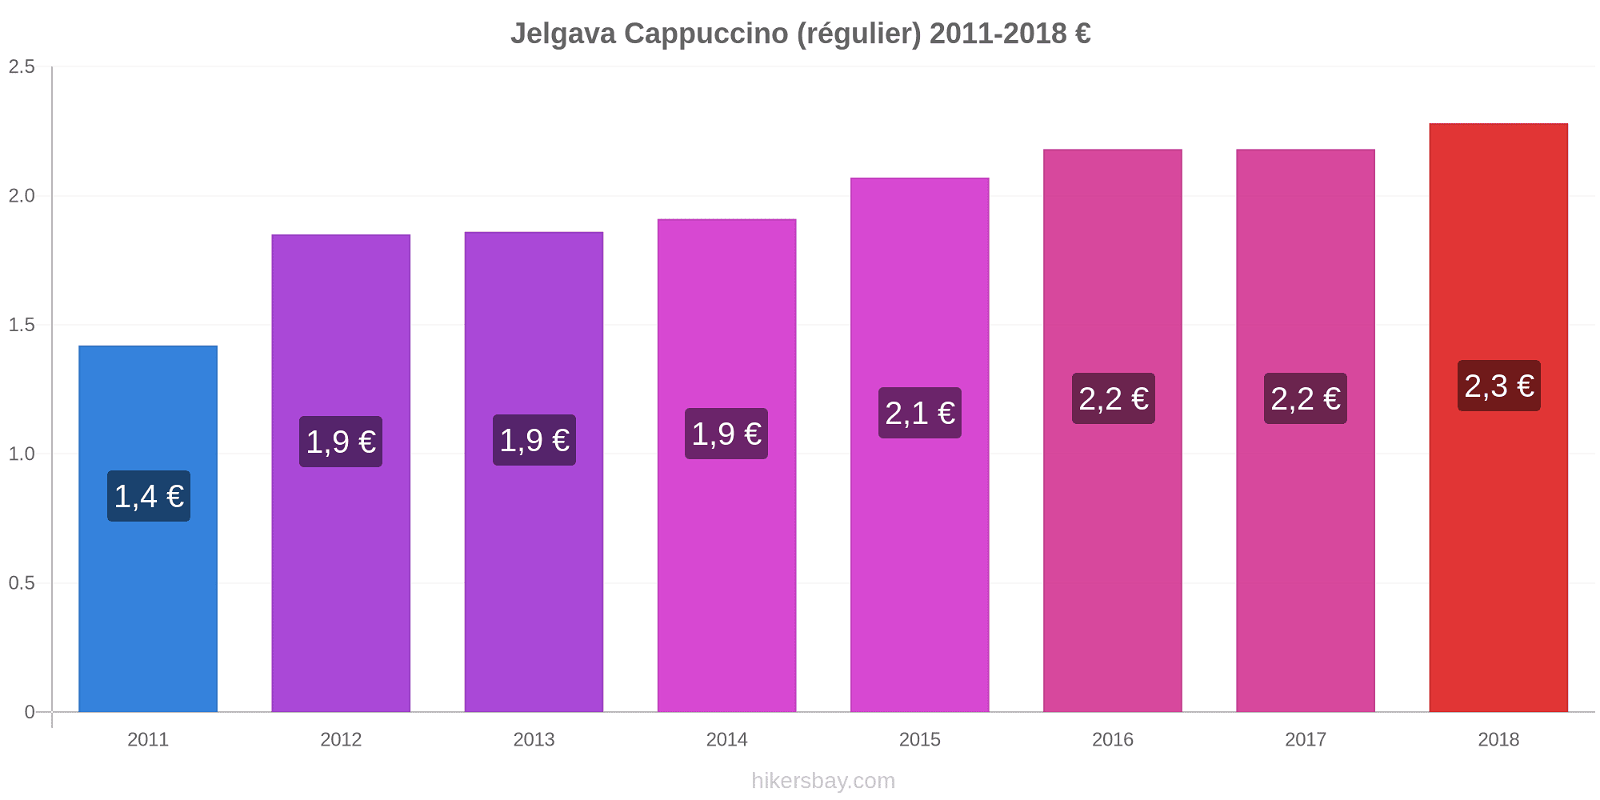 Jelgava changements de prix Cappuccino (régulier) hikersbay.com